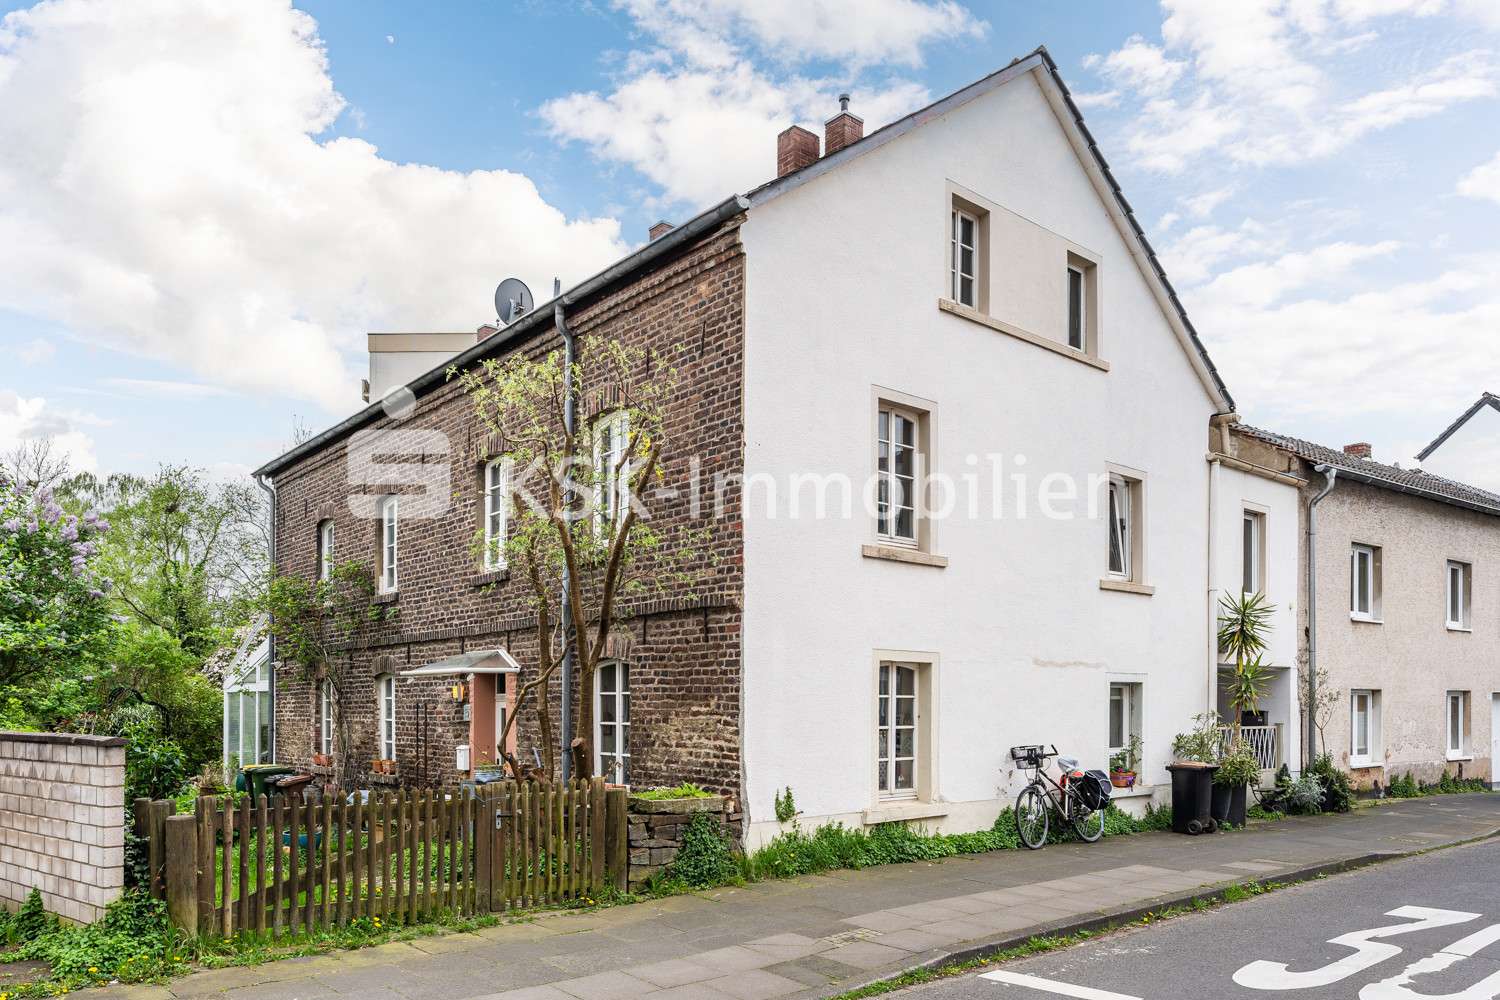 130457 Außenansicht - Doppelhaushälfte in 53721 Siegburg / Zange mit 96m² kaufen